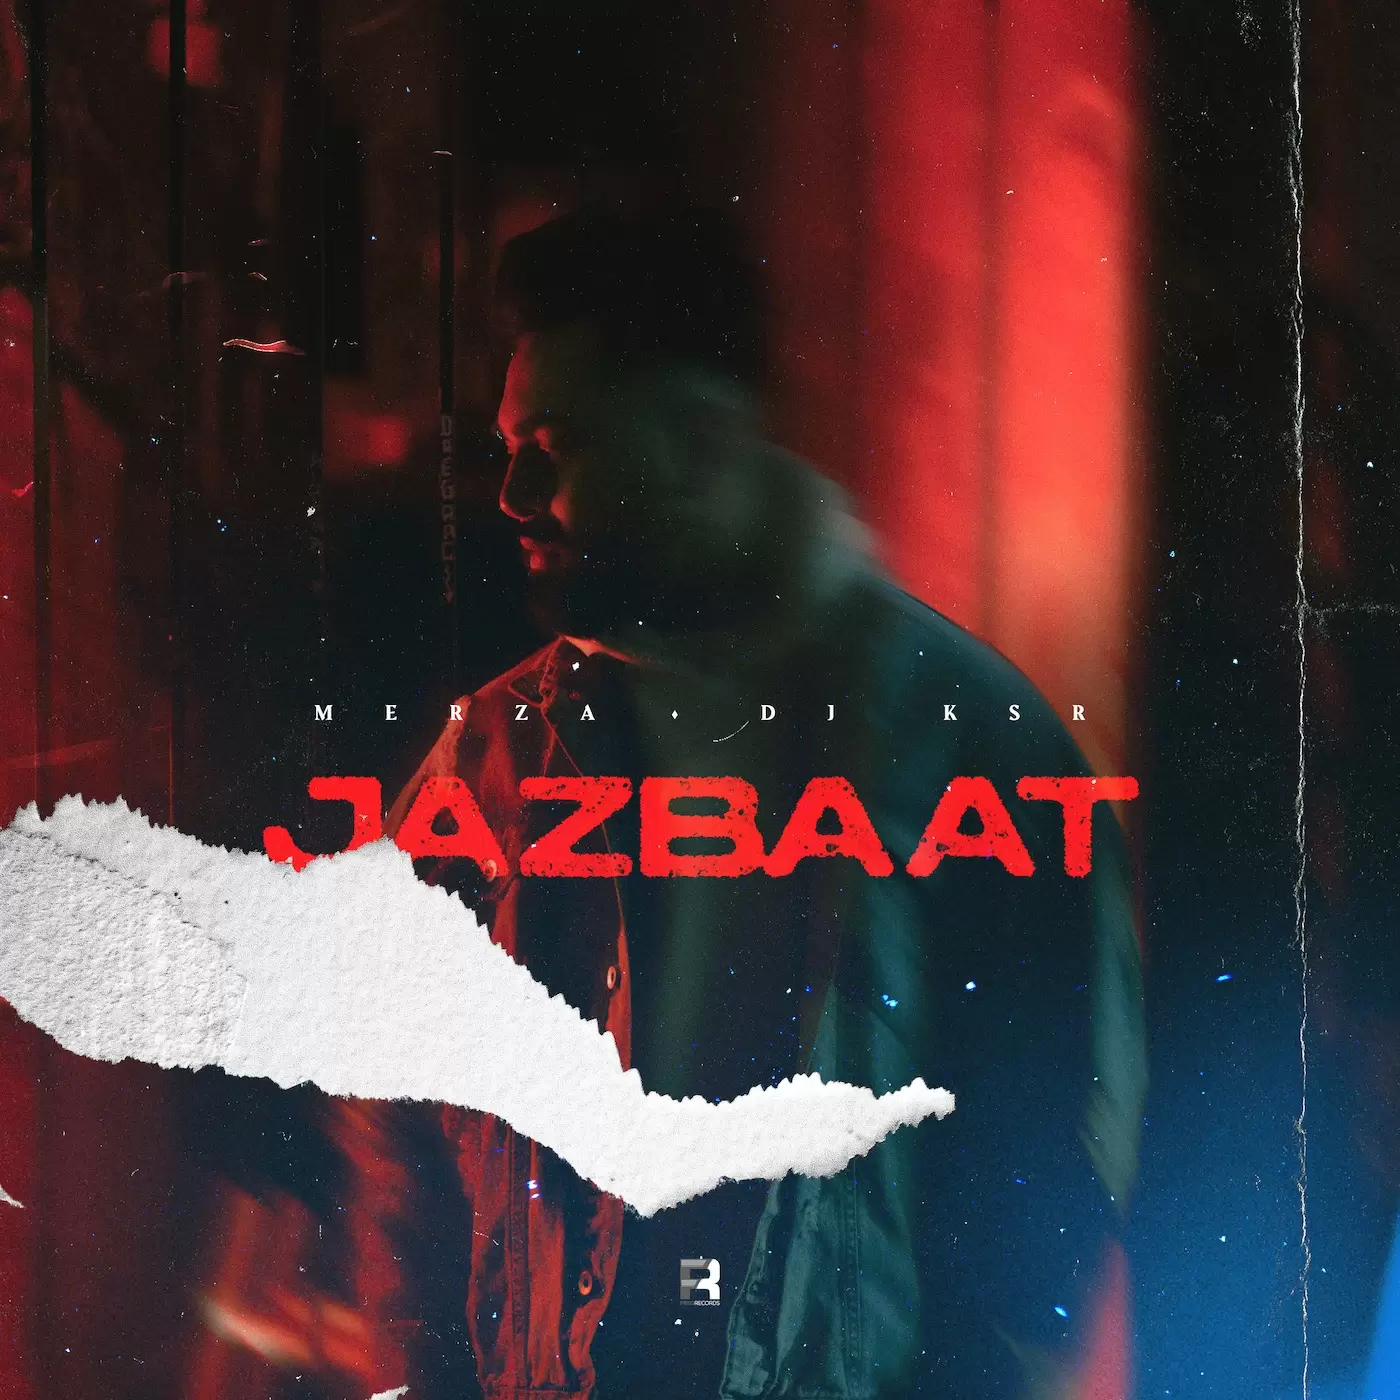 Jazbaat Merza Mp3 Download Song - Mr-Punjab